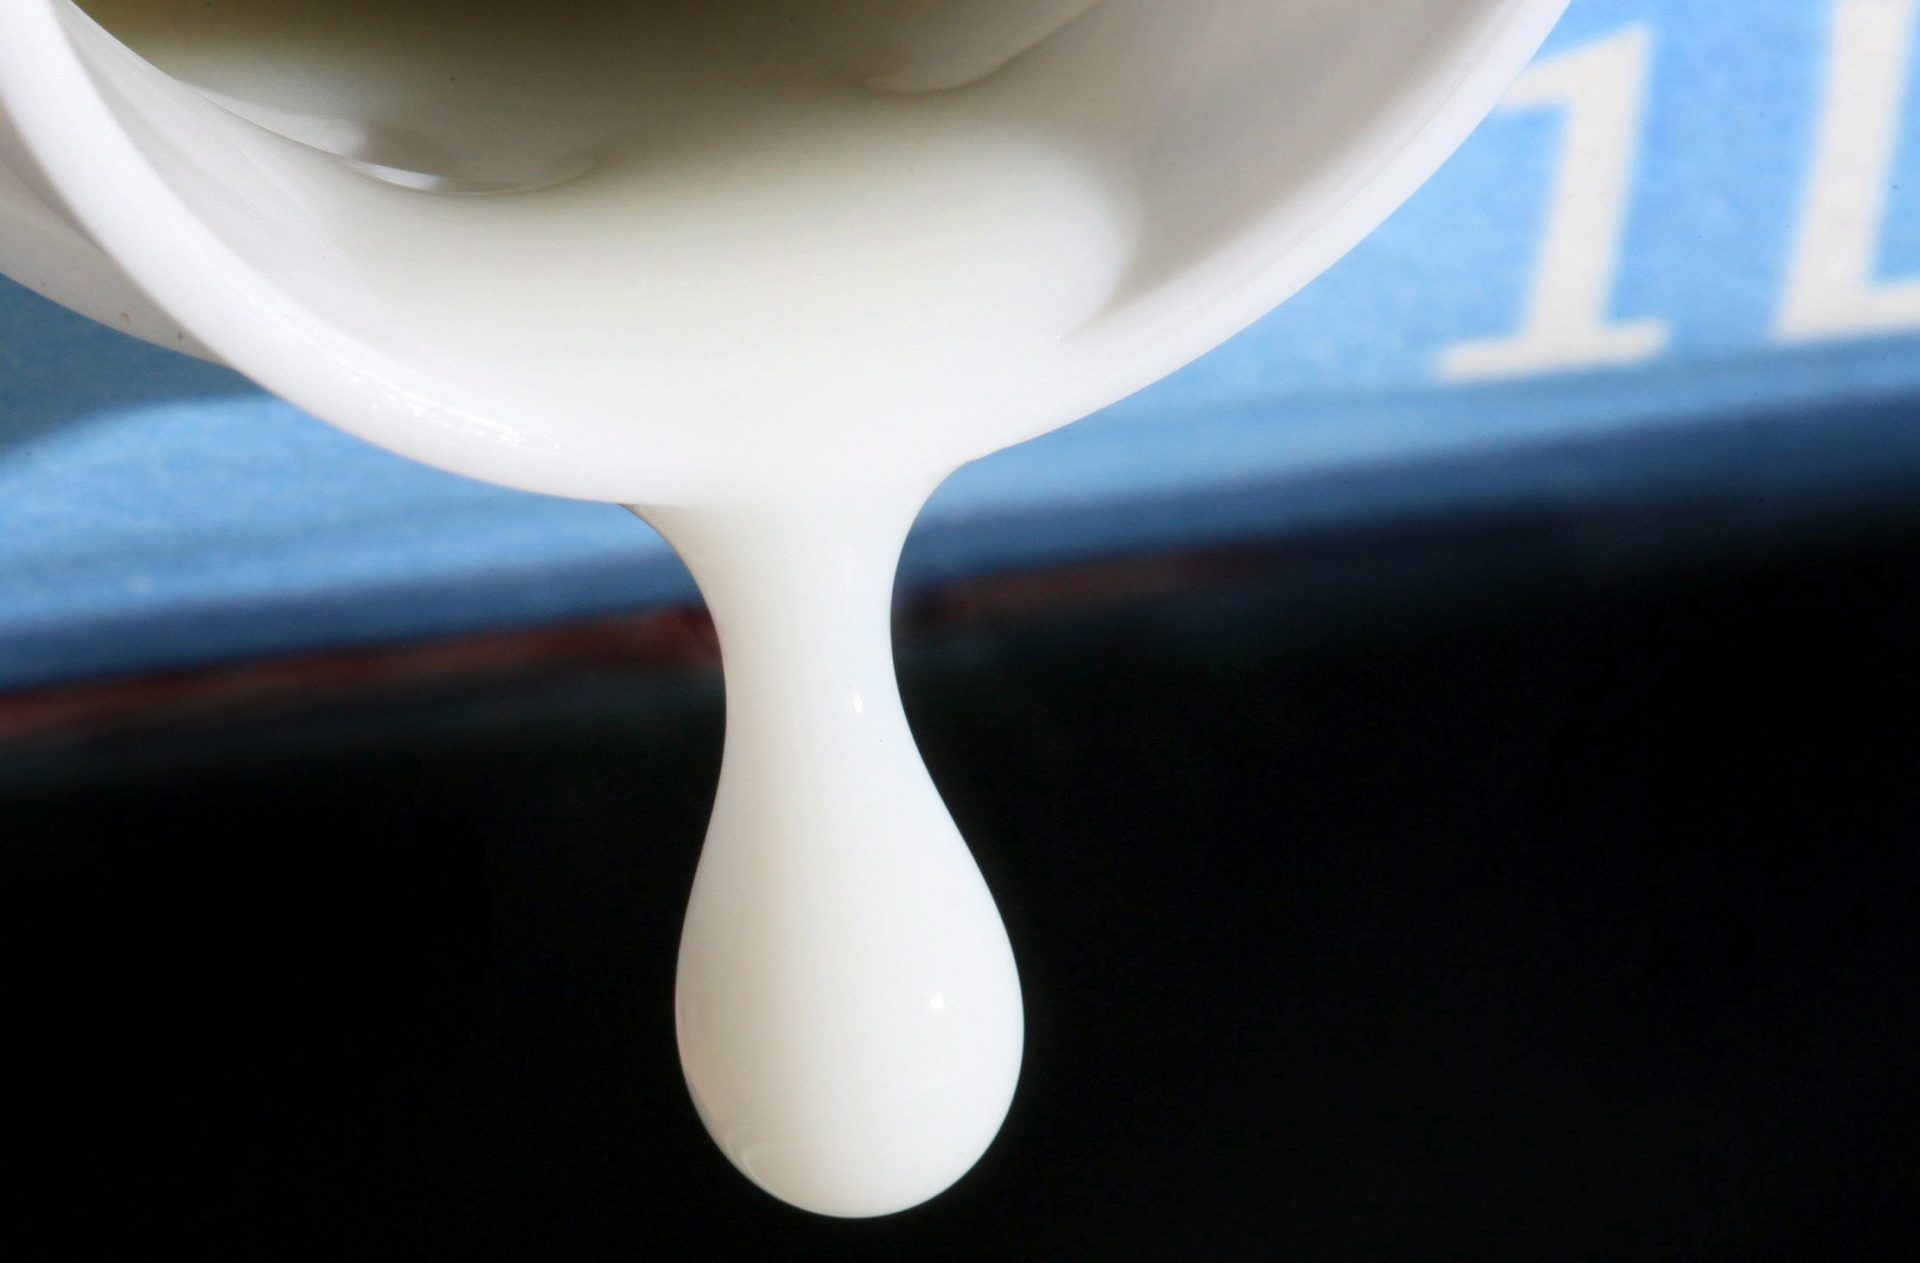 Una gota de leche. Foto: EPA/MARTIN GERTEN